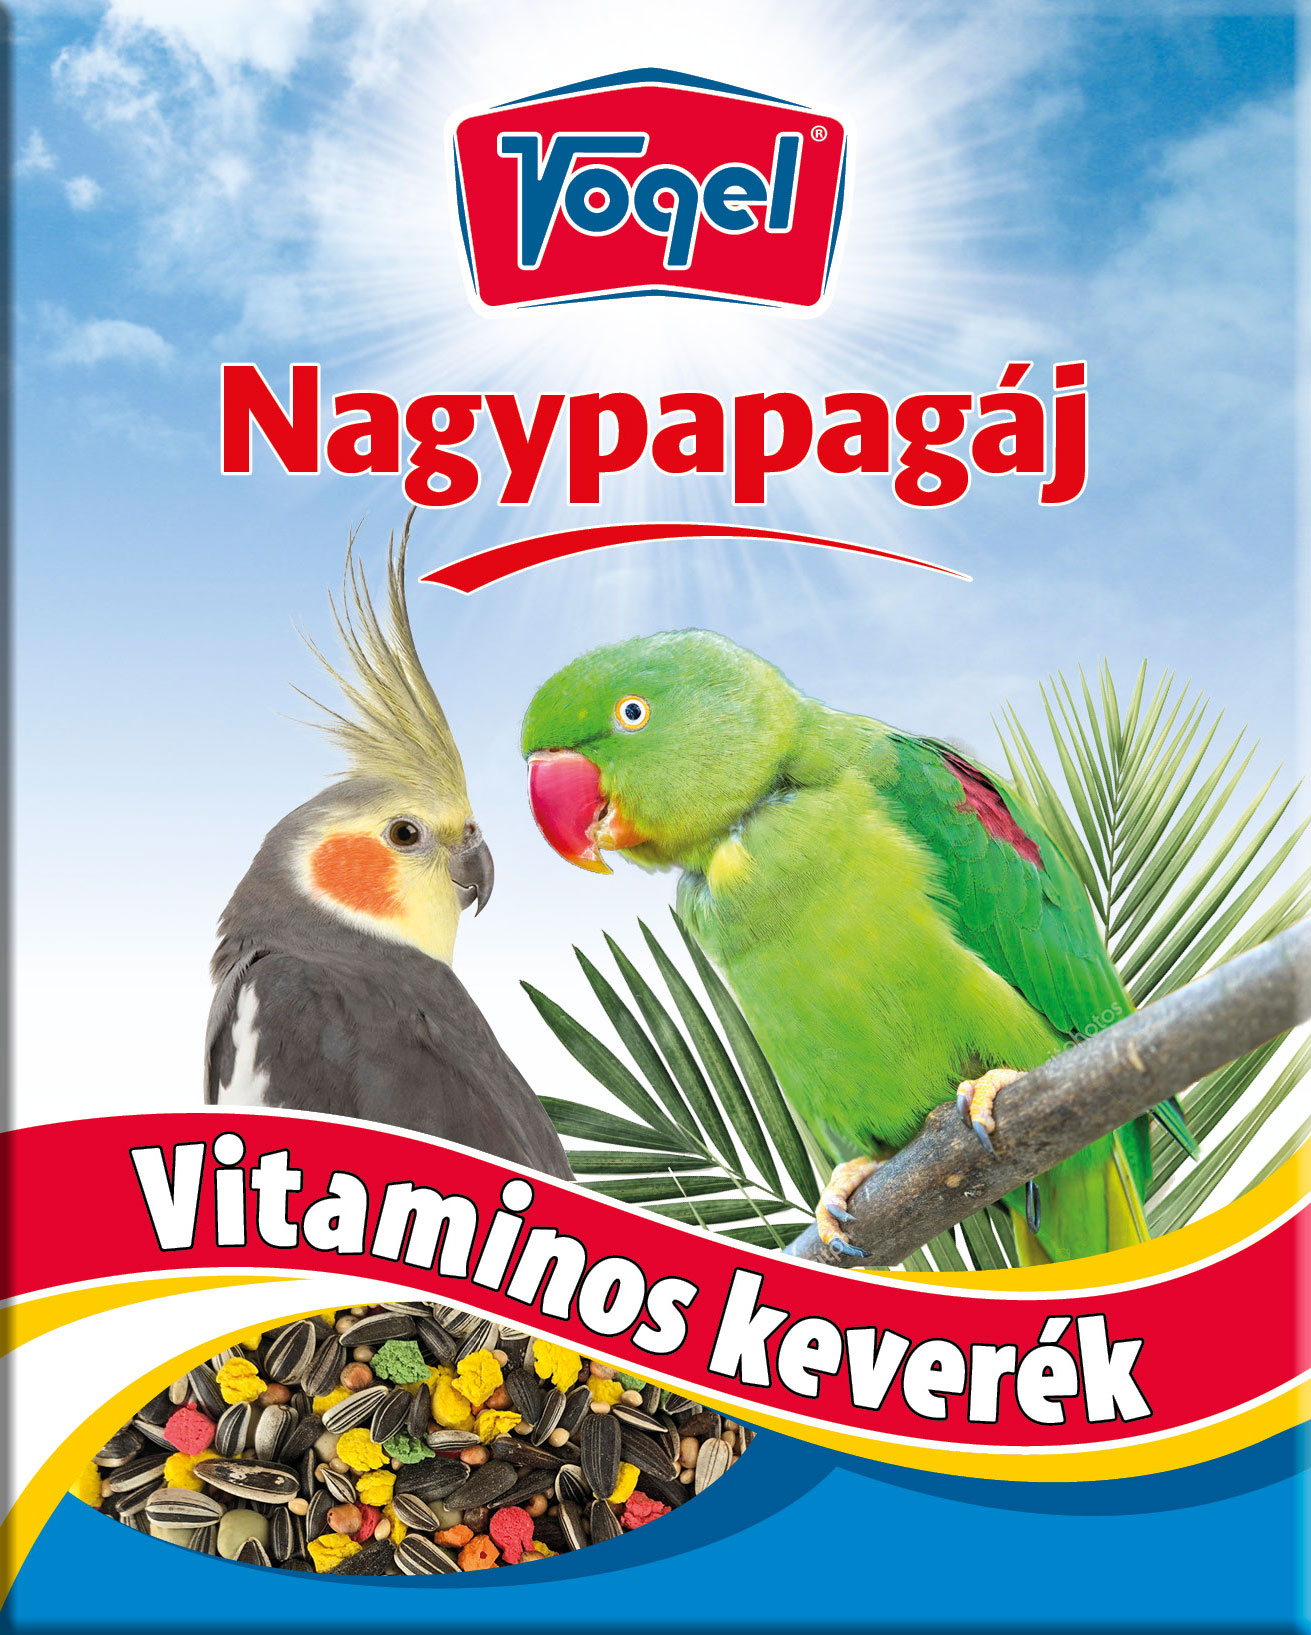 Vogel Nagypapagáj vitamin 50 g